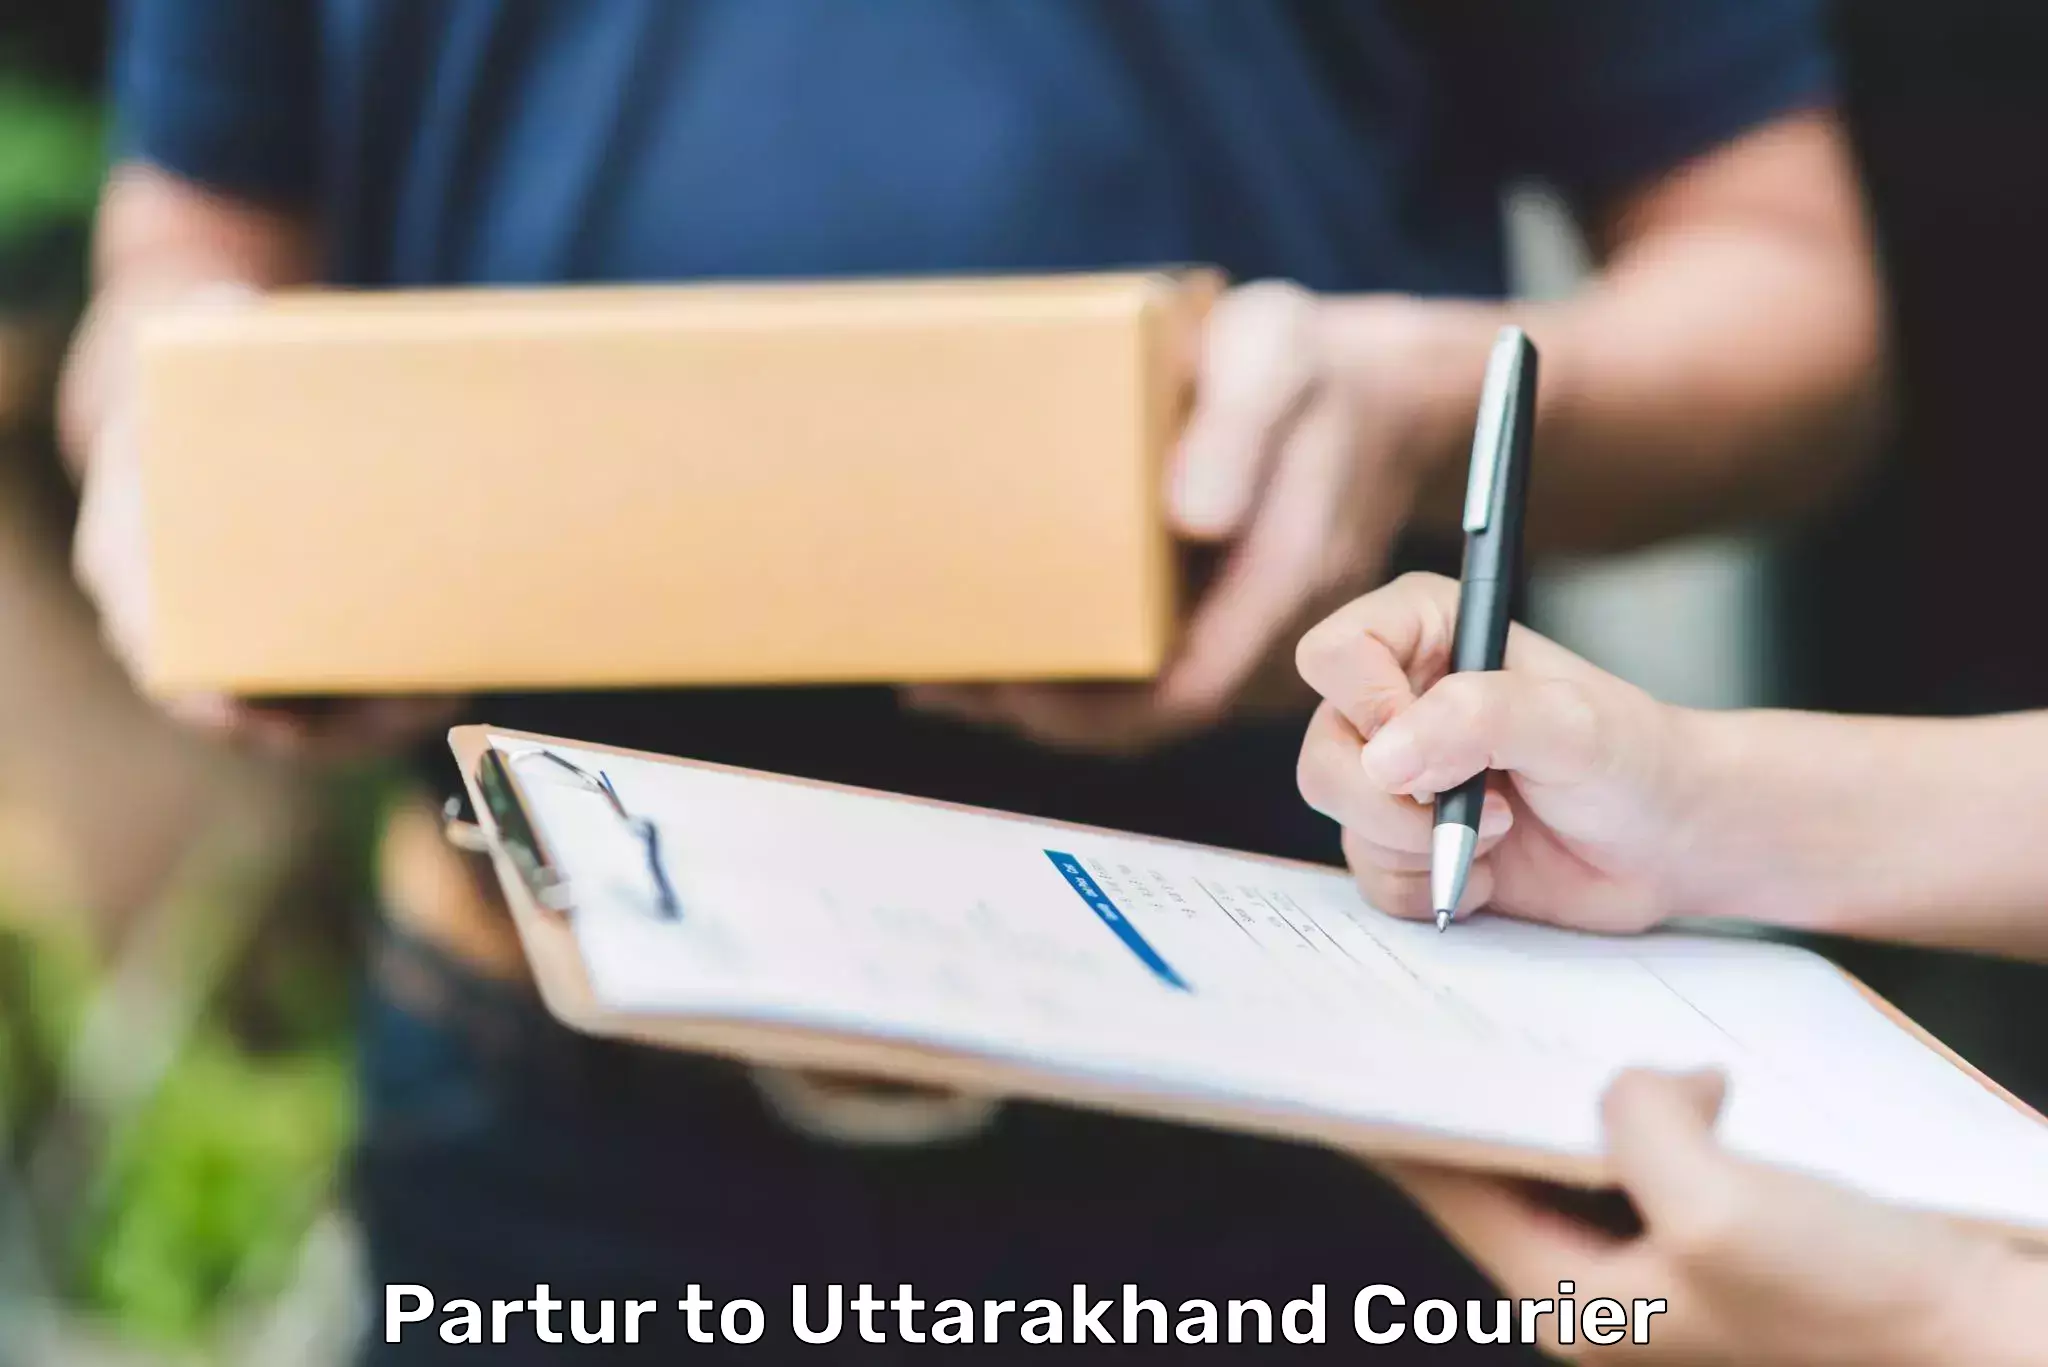 Bulk shipment Partur to Uttarakhand